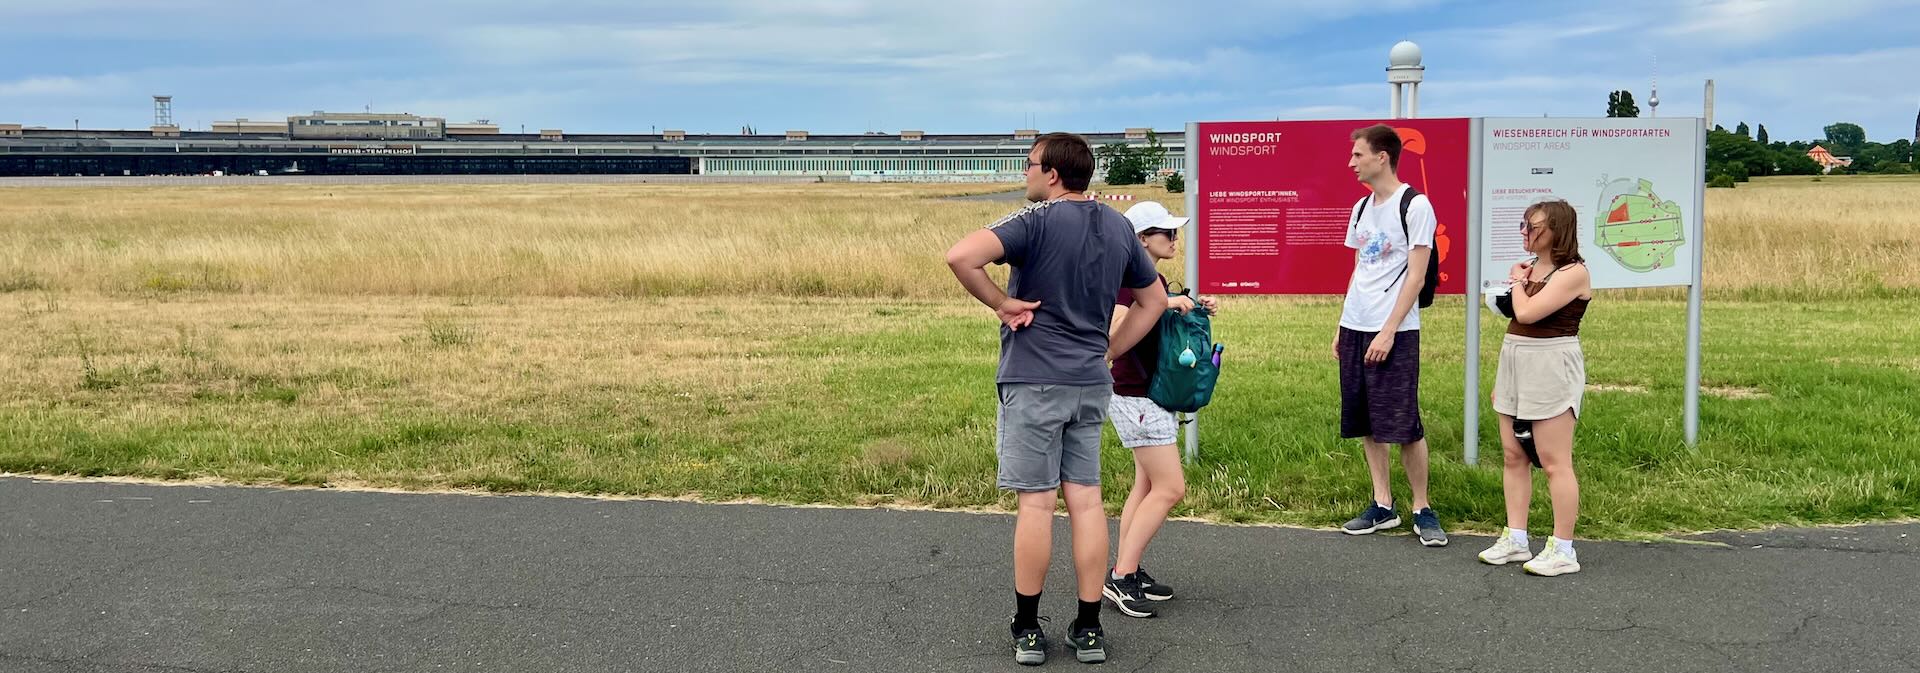 Walking across the Tempelhof runway.